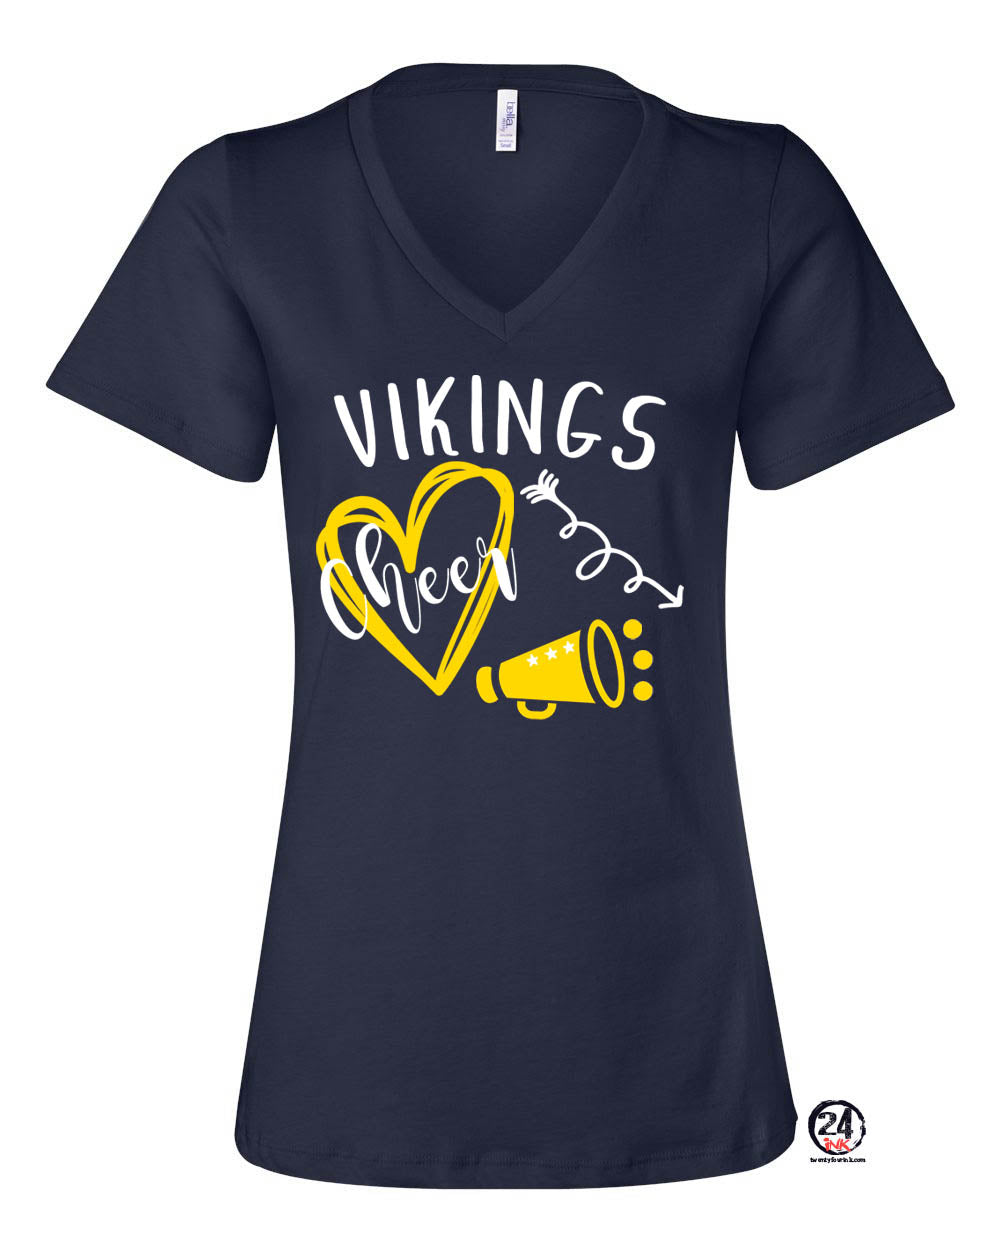 Vikings Cheer Design 3 V-neck T-shirt